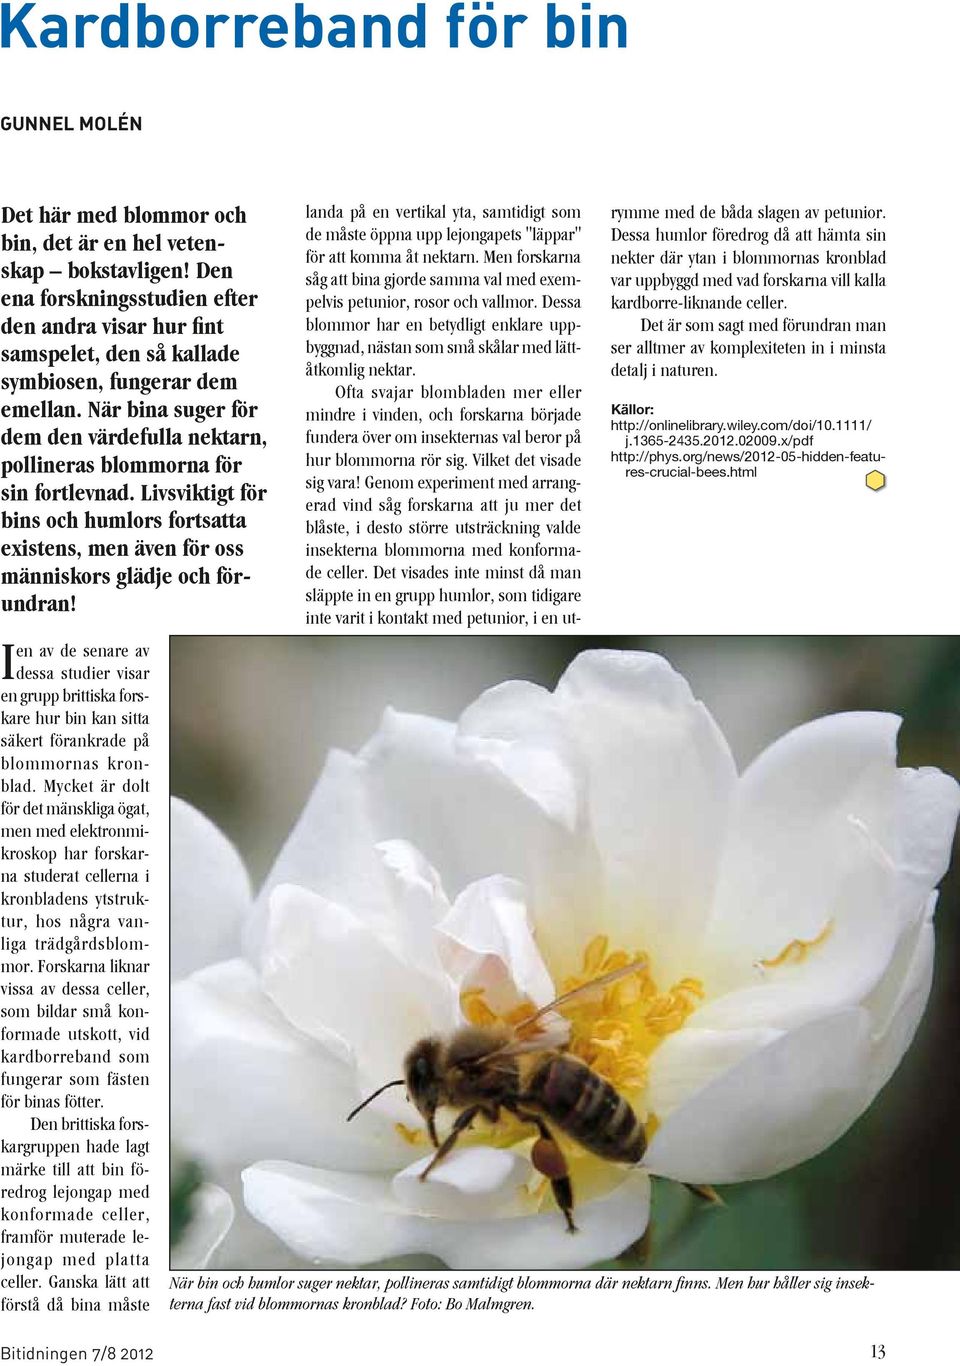 När bina suger för dem den värdefulla nektarn, pollineras blommorna för sin fortlevnad. Livsviktigt för bins och humlors fortsatta existens, men även för oss människors glädje och förundran!